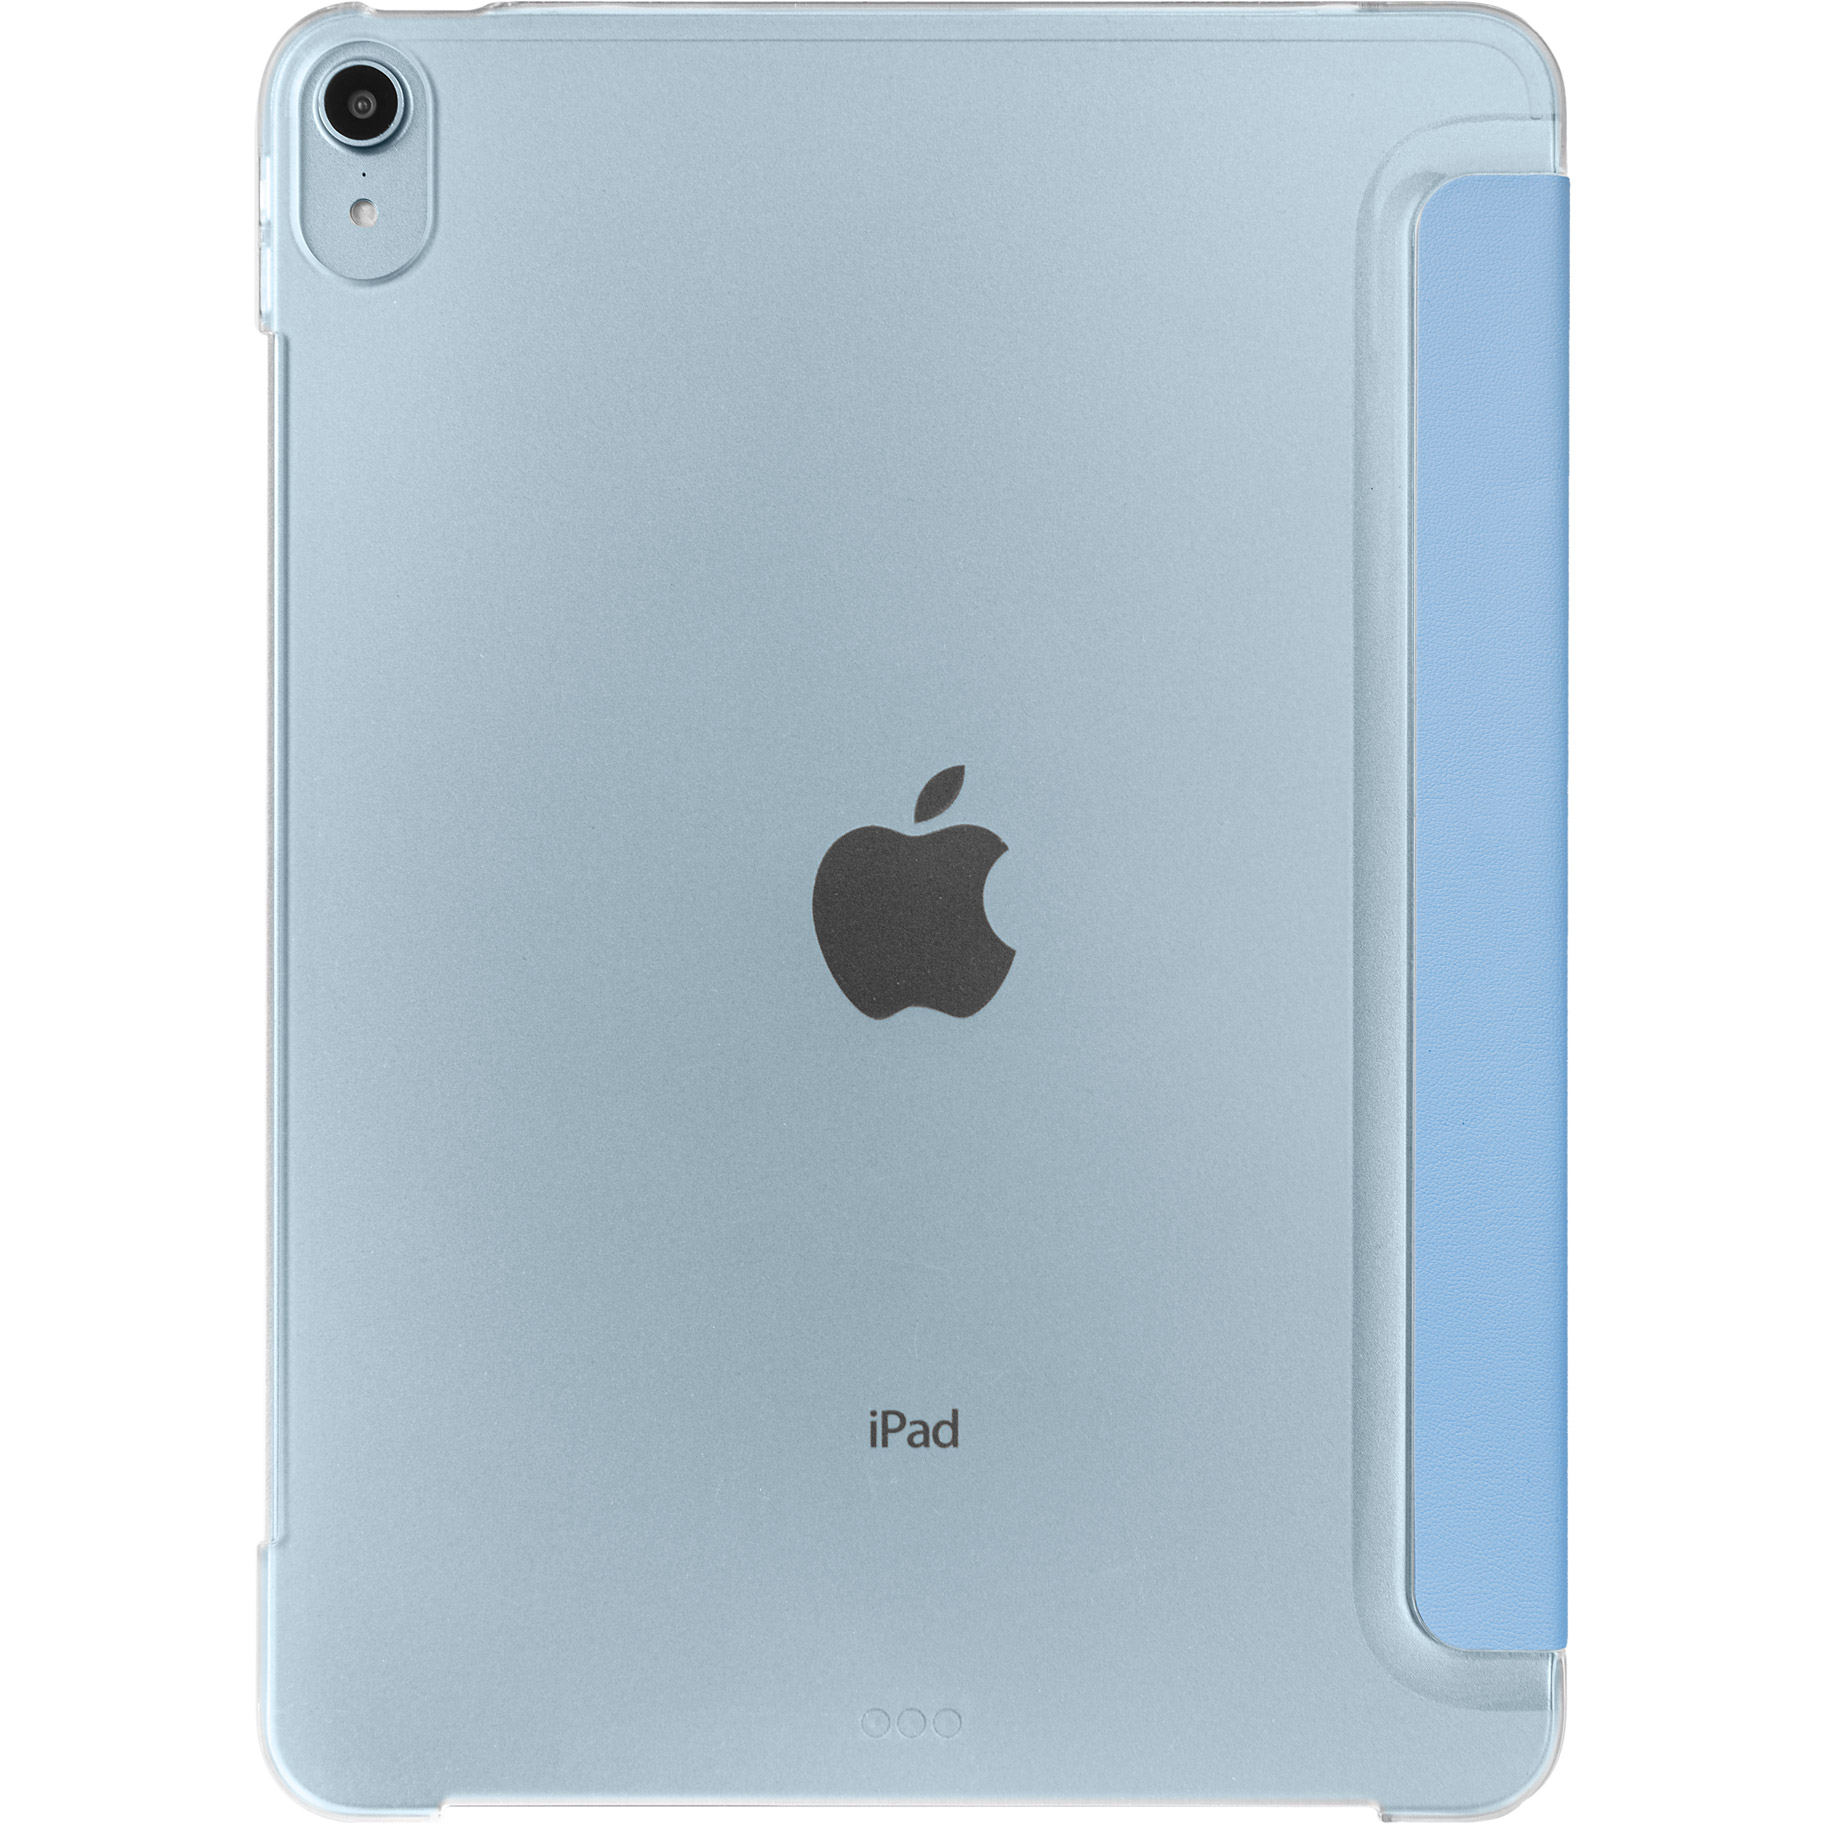 iPad Air (第4世代)10.9インチ スカイブルー